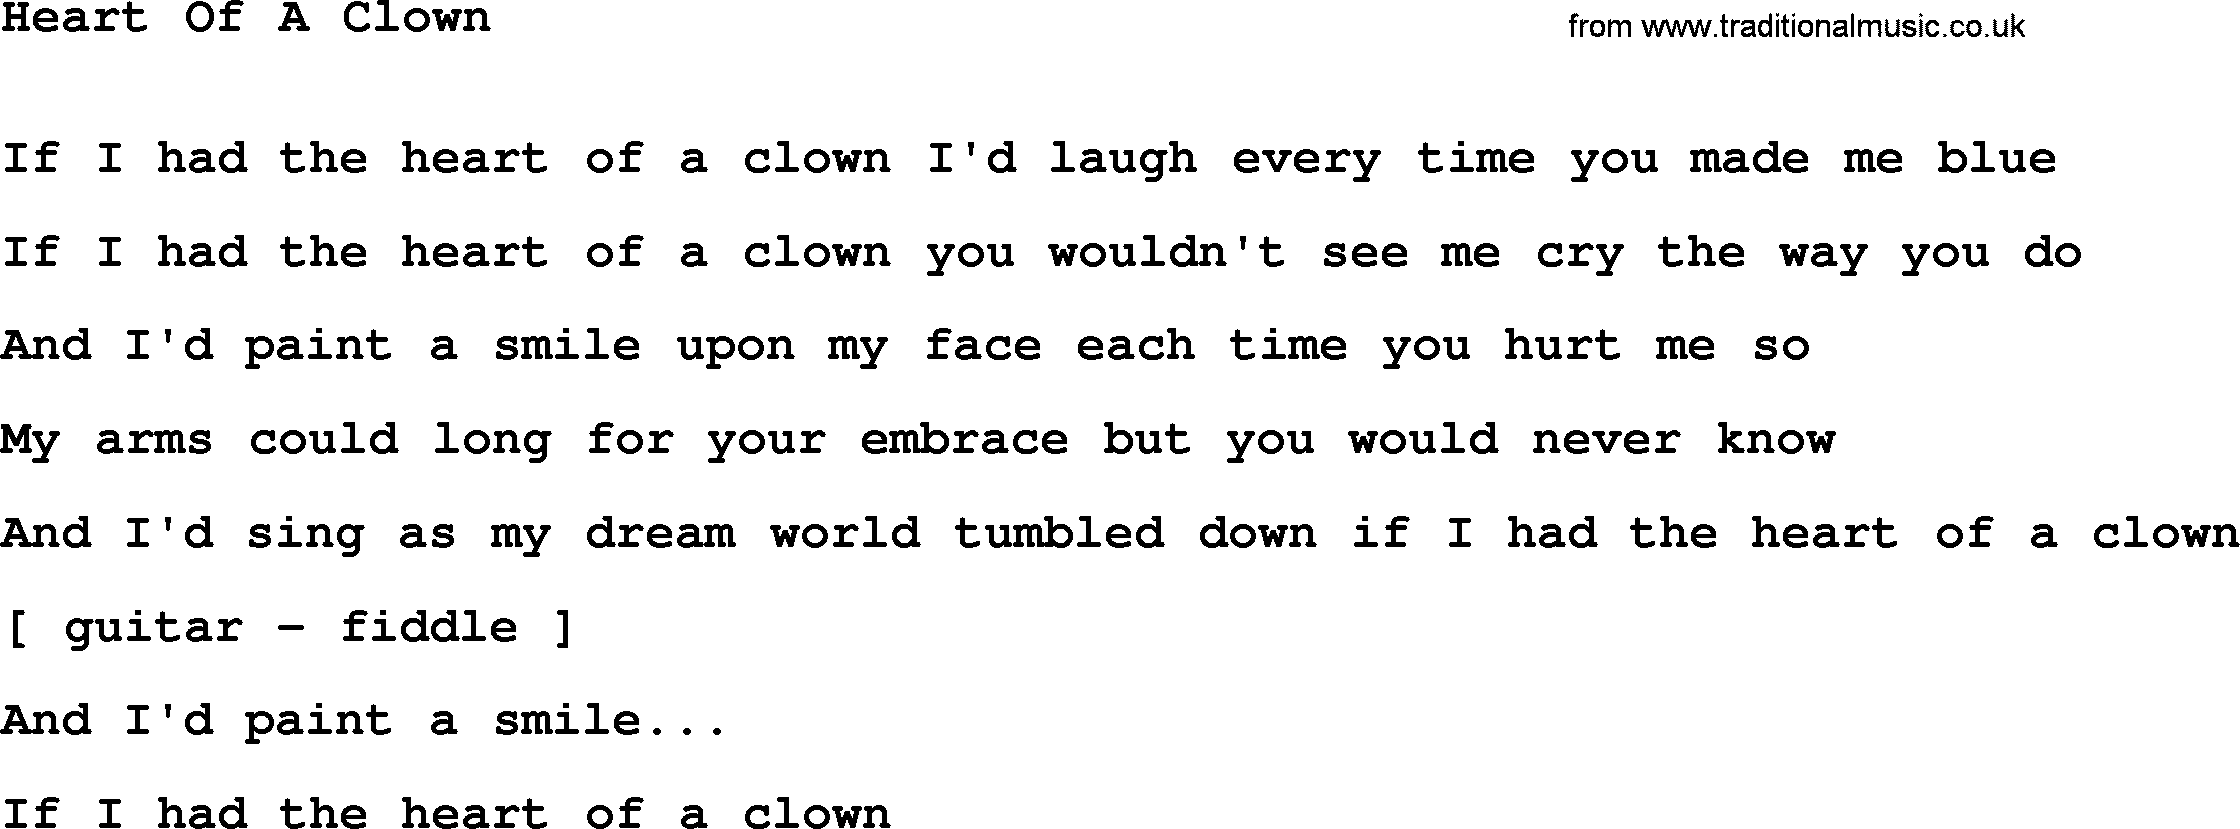 Willie Nelson song: Heart Of A Clown lyrics